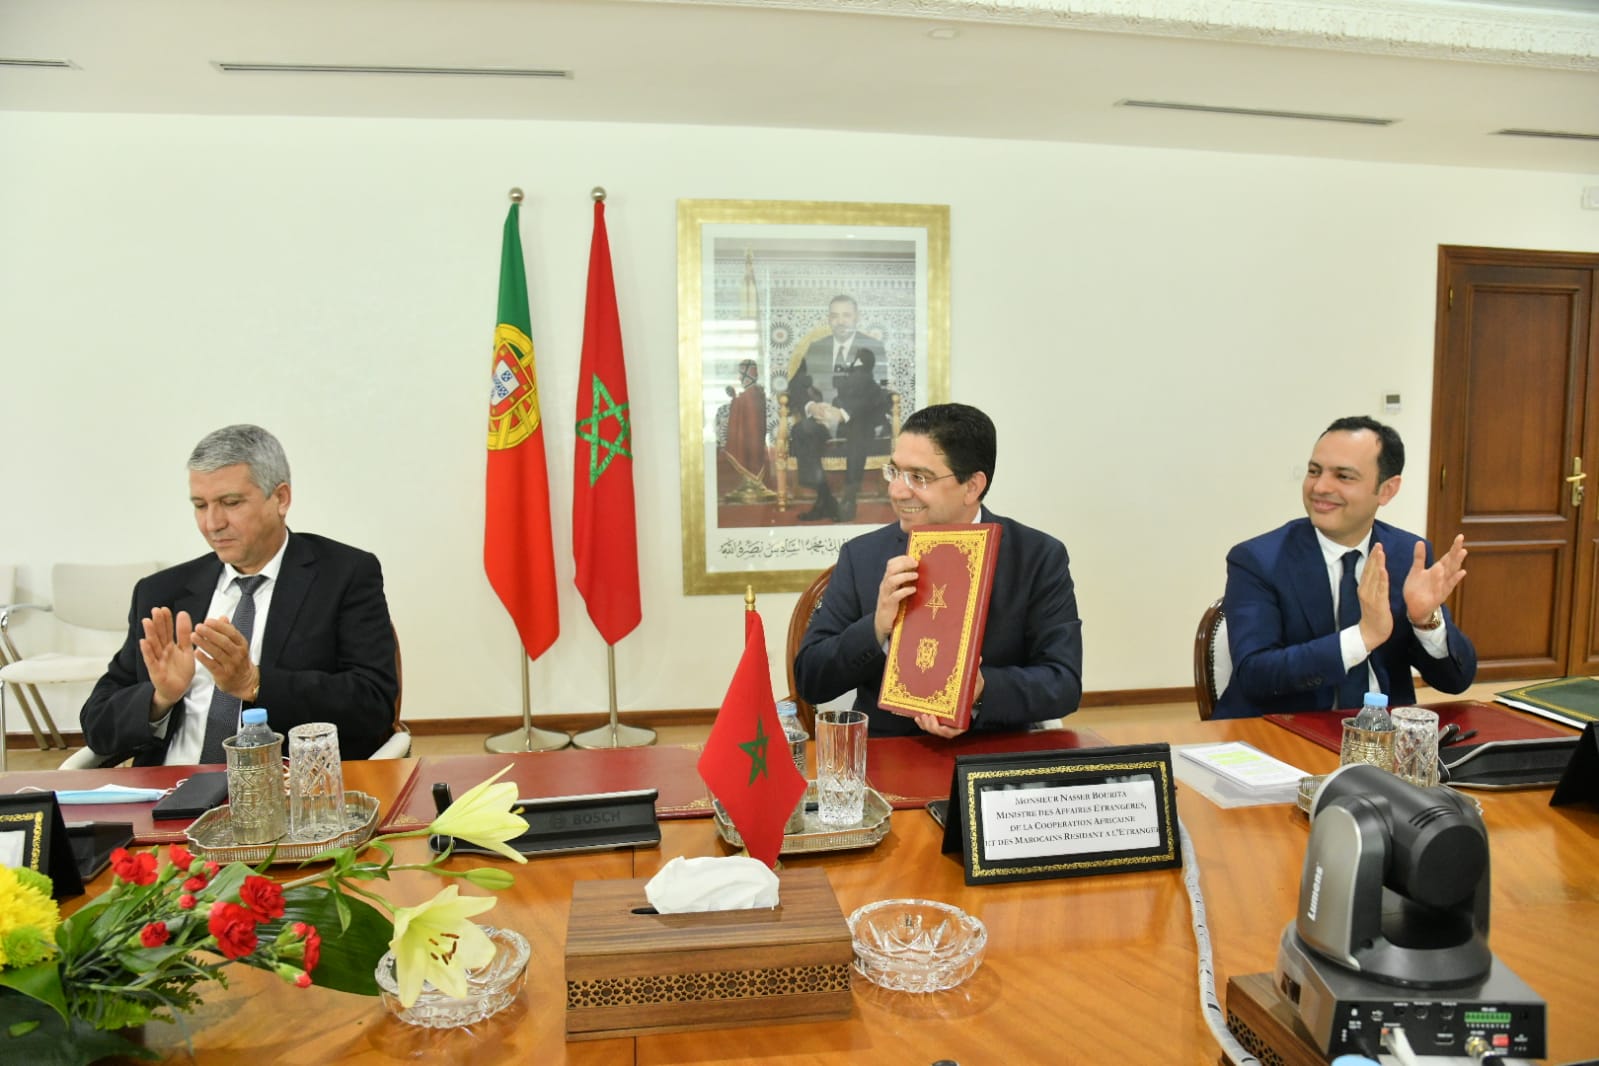 Marrocos e Portugal assinam acordo sobre emprego e residência de trabalhadores marroquinos